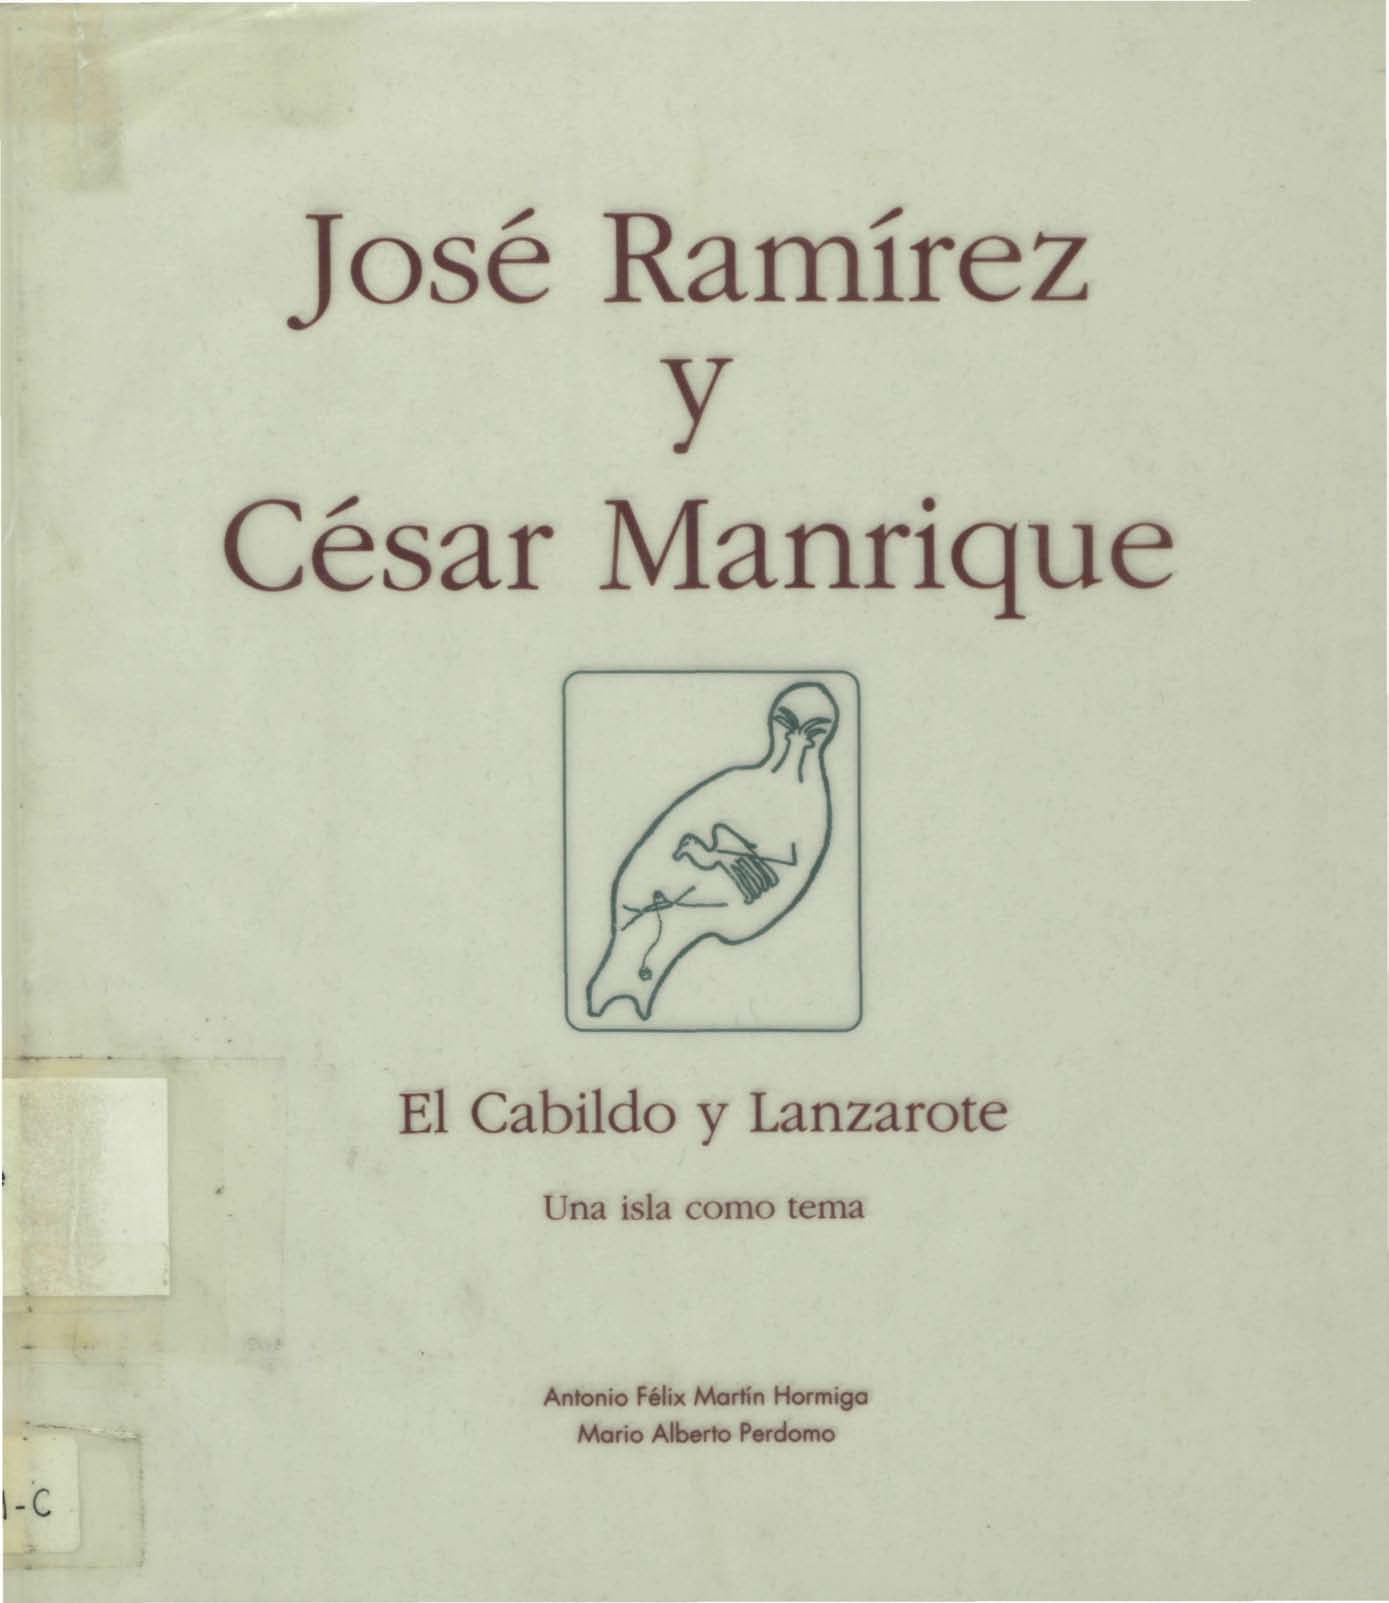 José Ramírez y César Manrique. El Cabildo y Lanzarote, una isla como tema